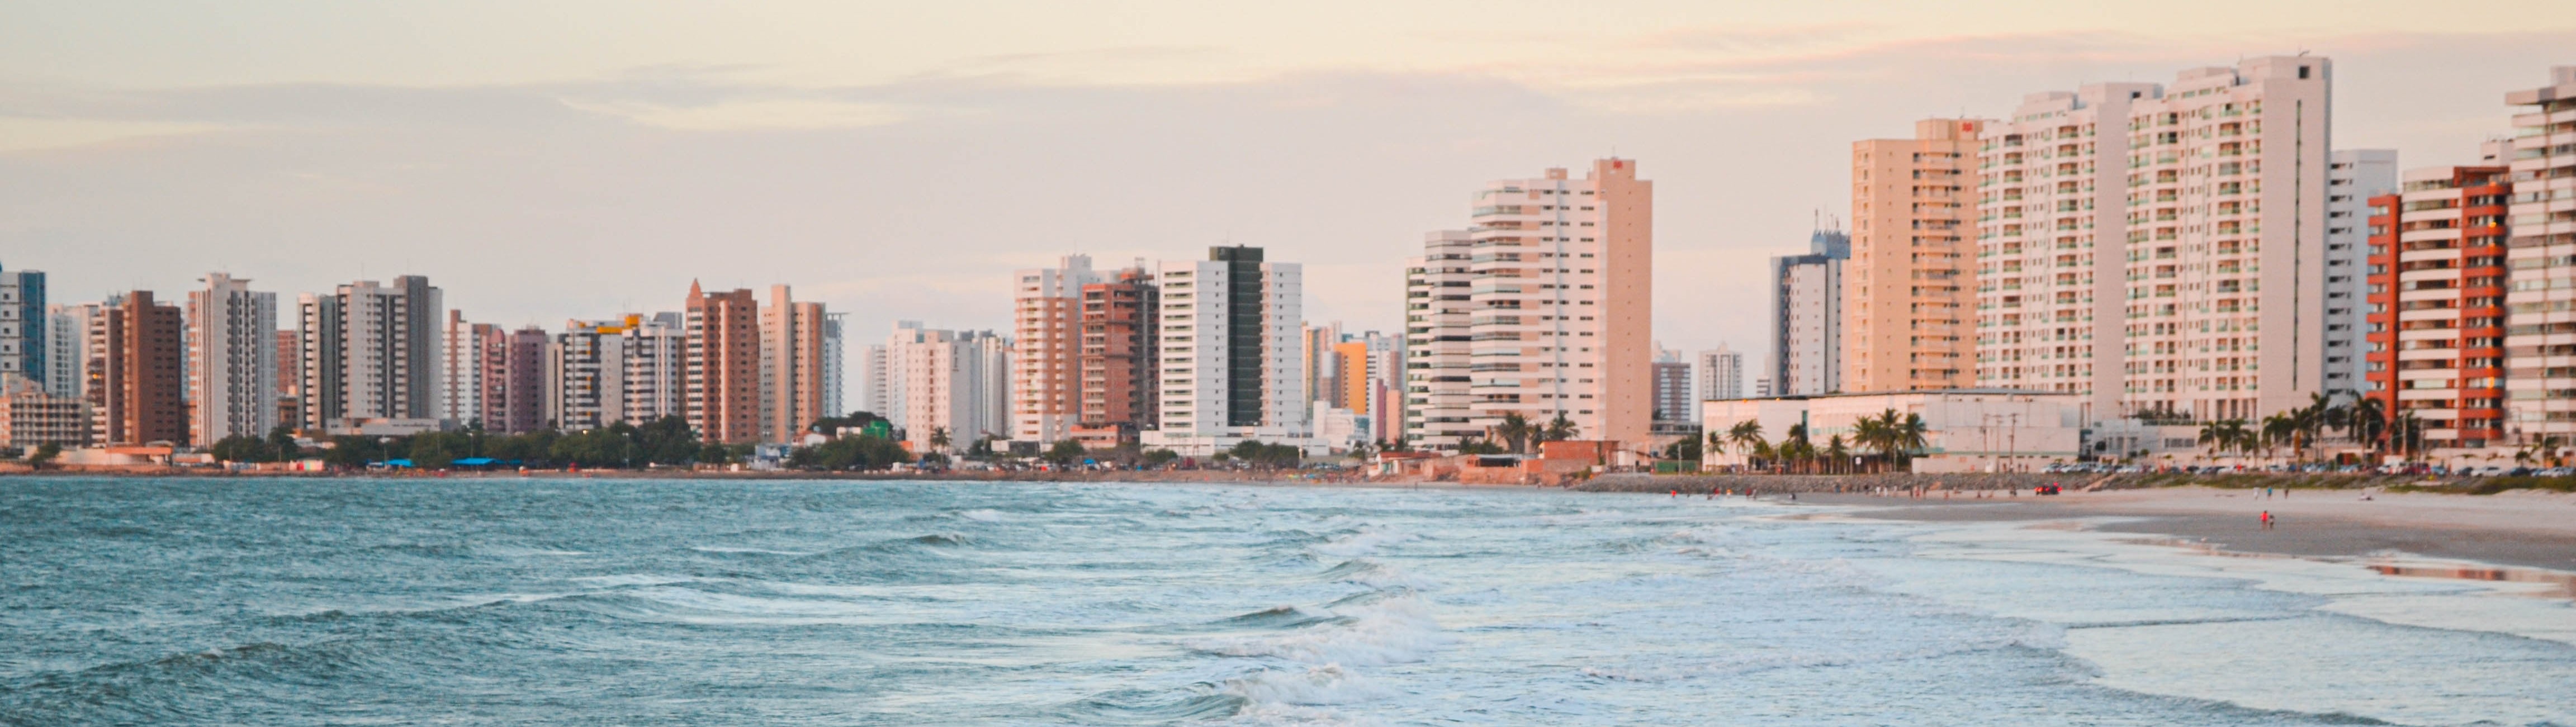 praias de São Luís, Maranhão

coisas para fazer em São Luís